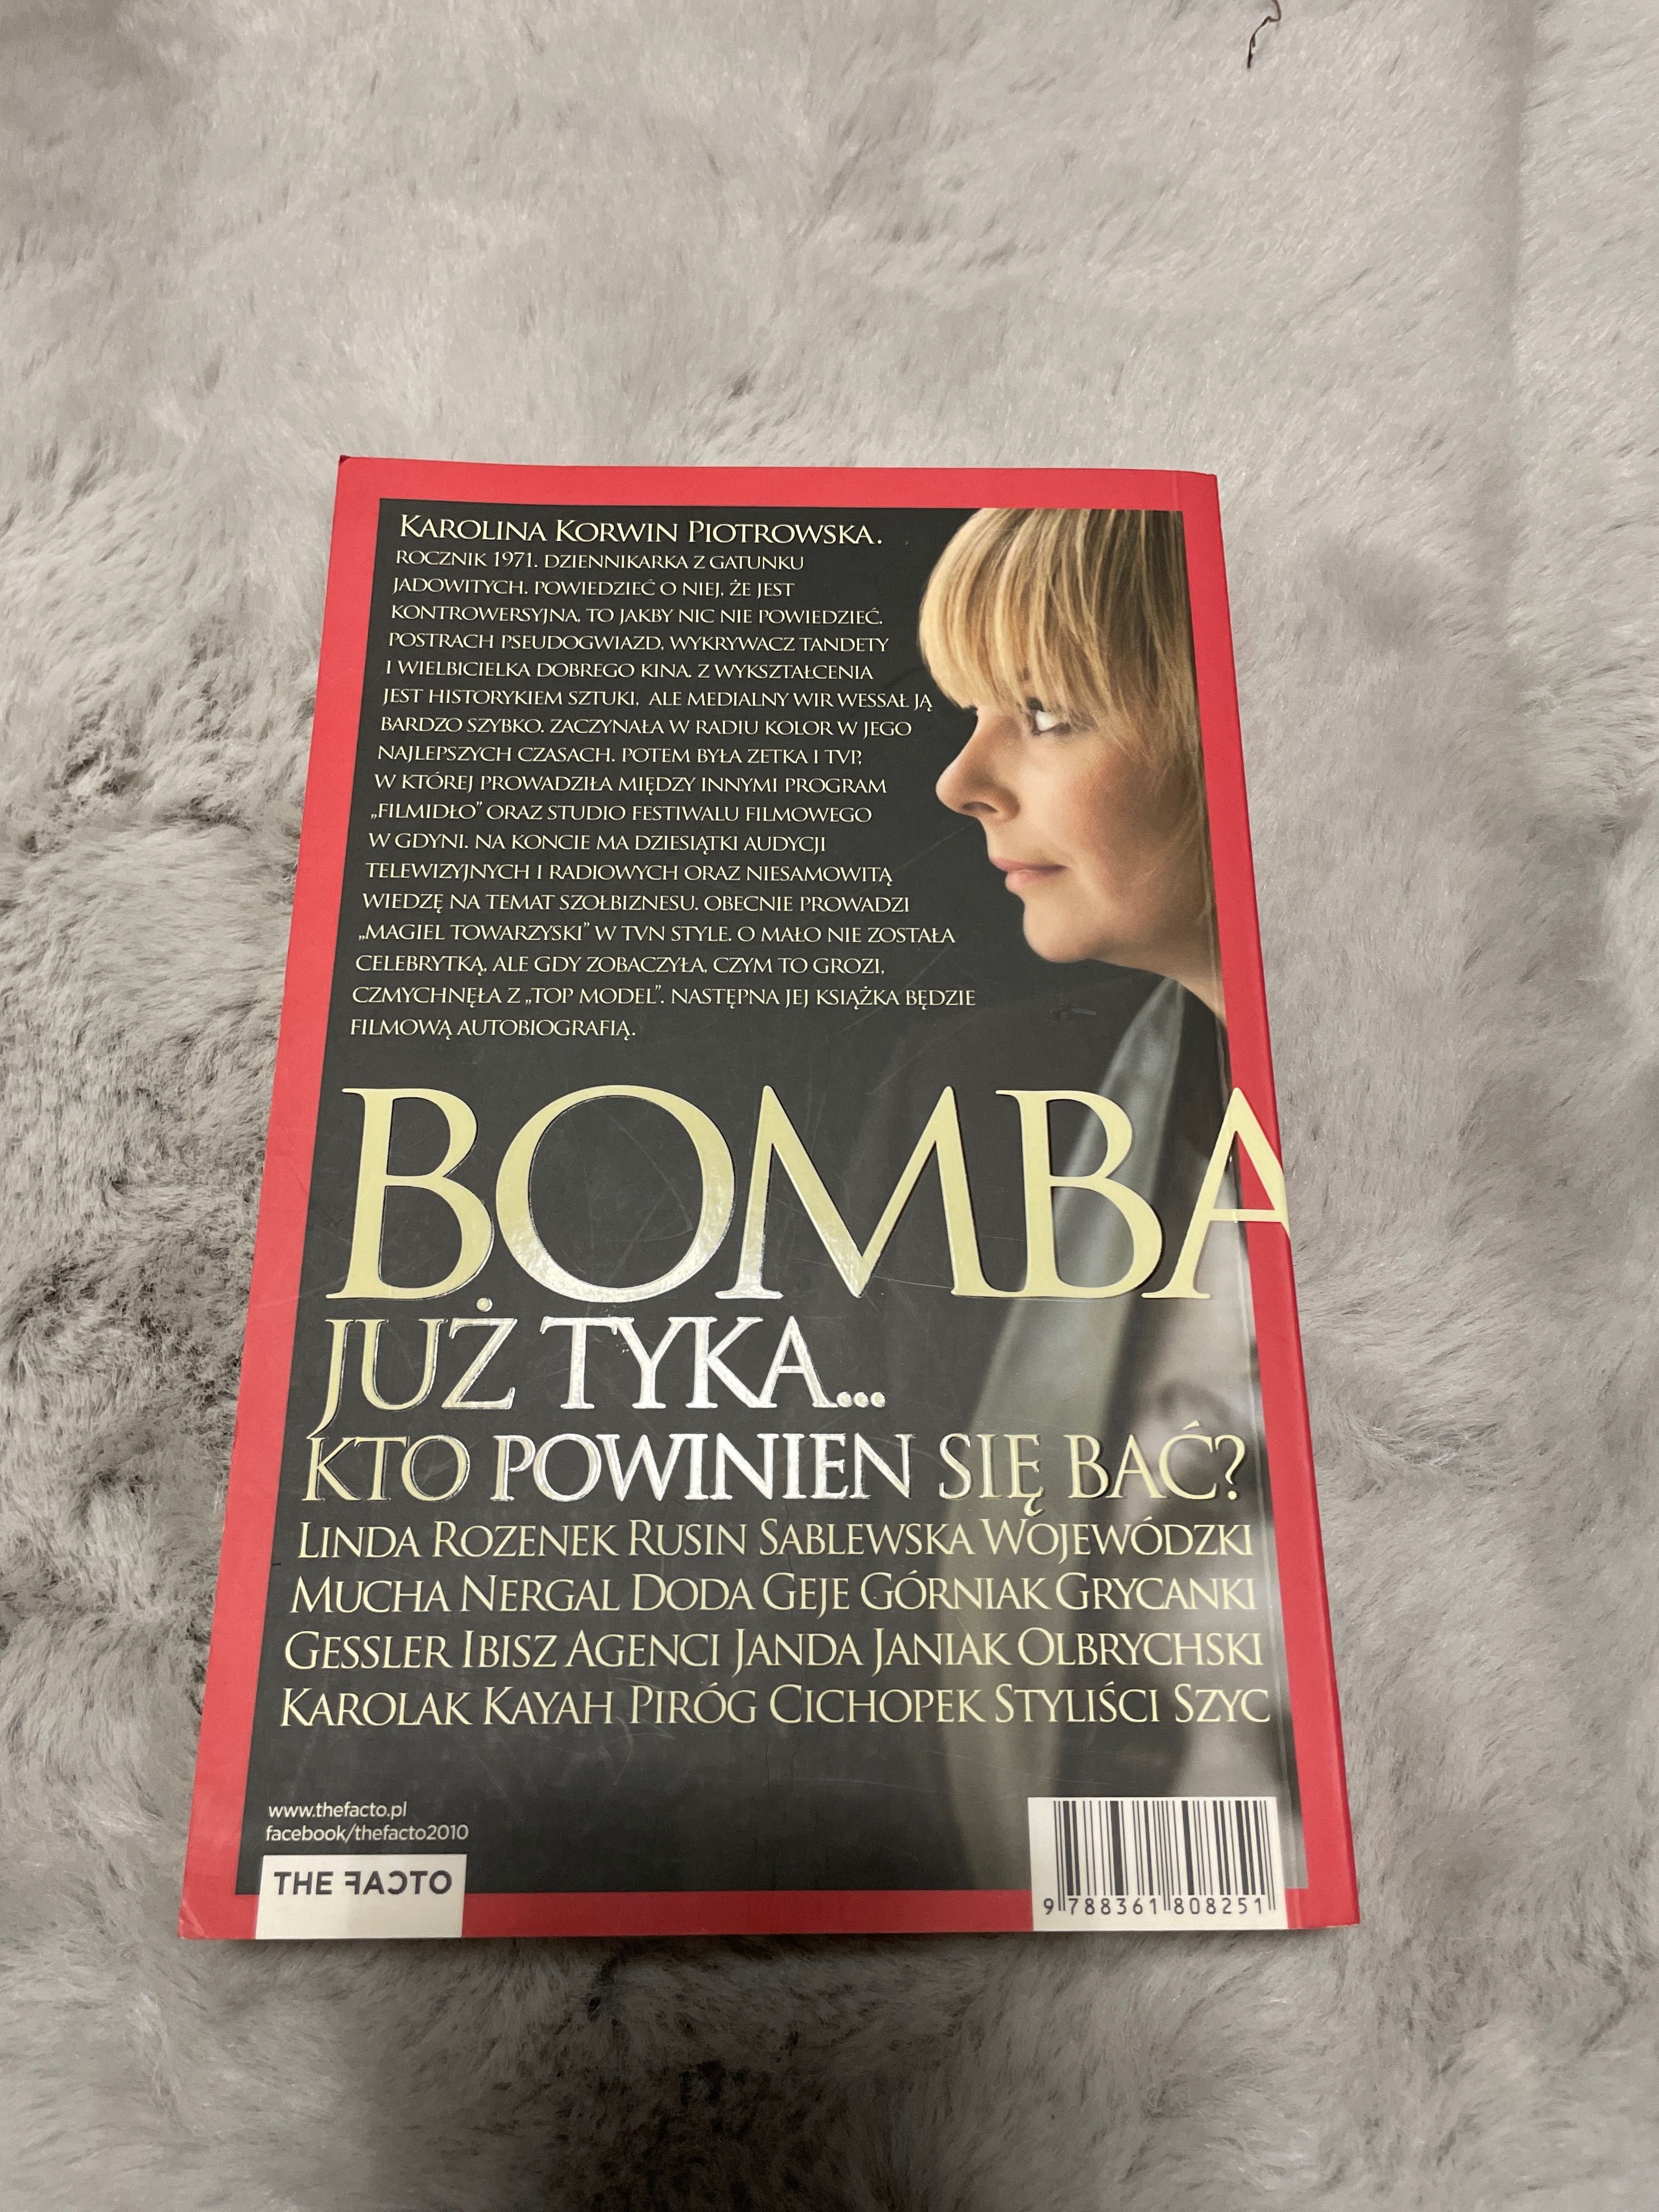 Bomba czyli alfabet polskiego szołbiznesu Karolina Korwin Piotrowska